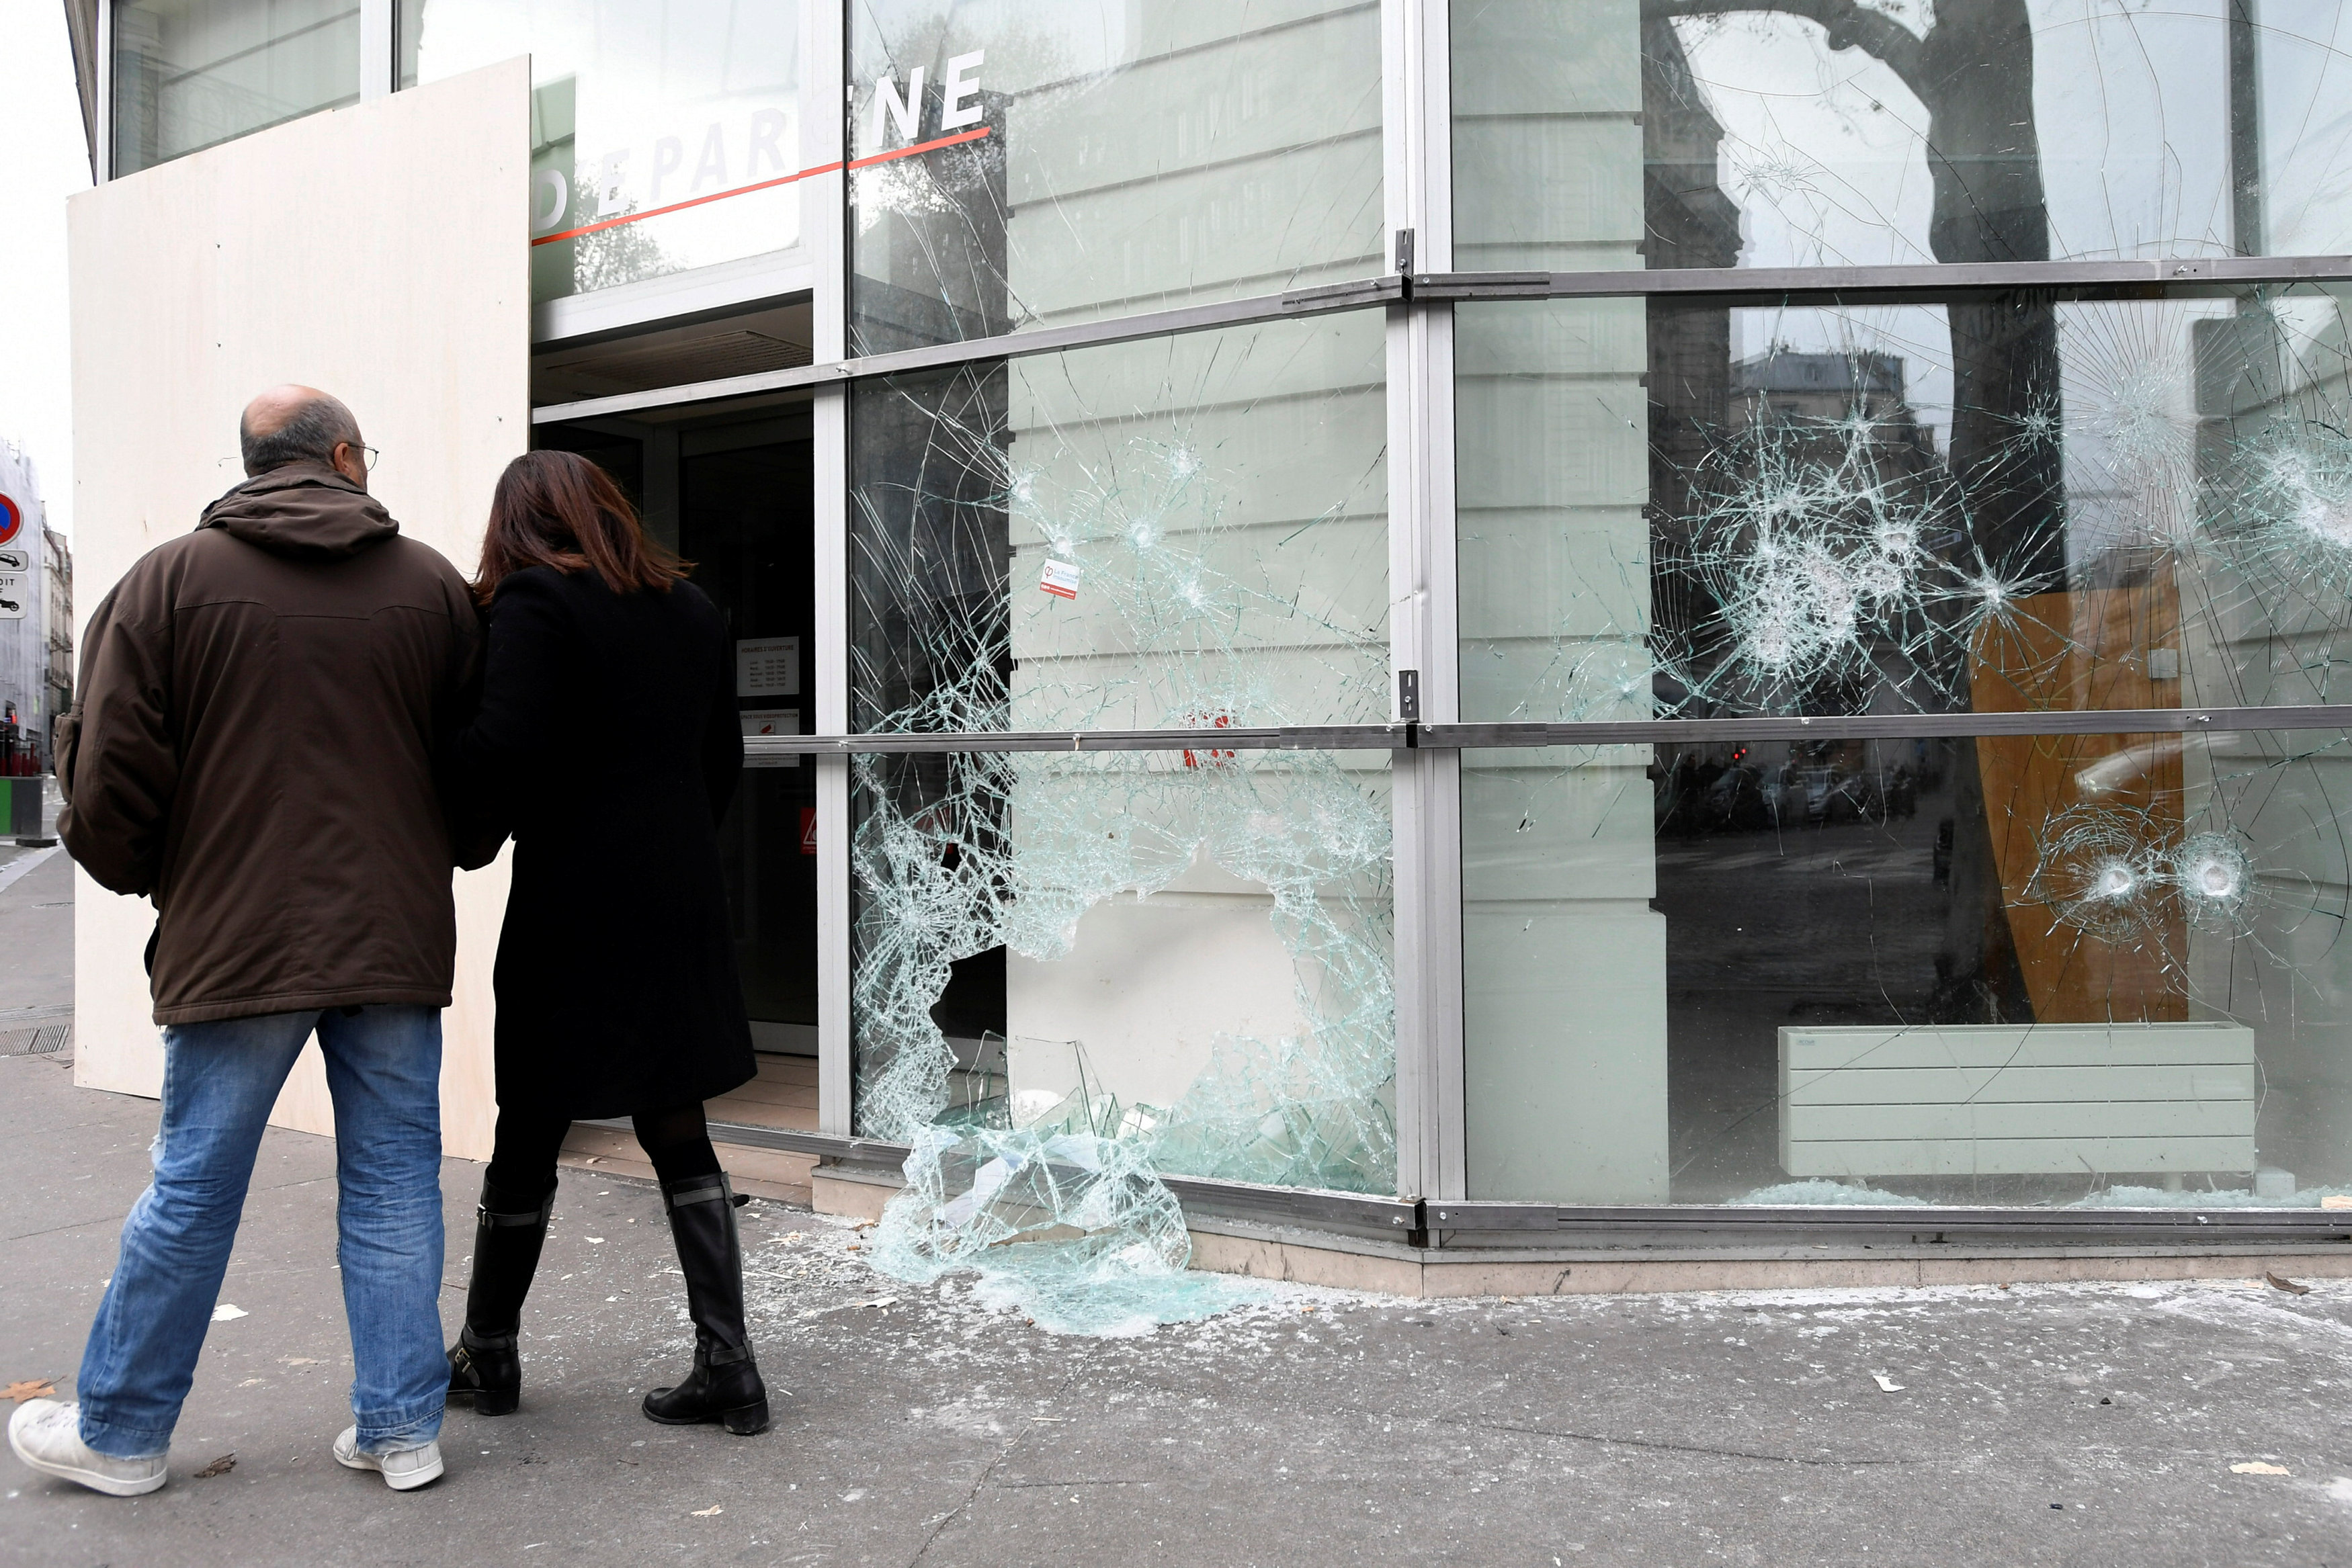 مواطنان ينظران بحسرة لأثار الدمار فى شوارع باريس